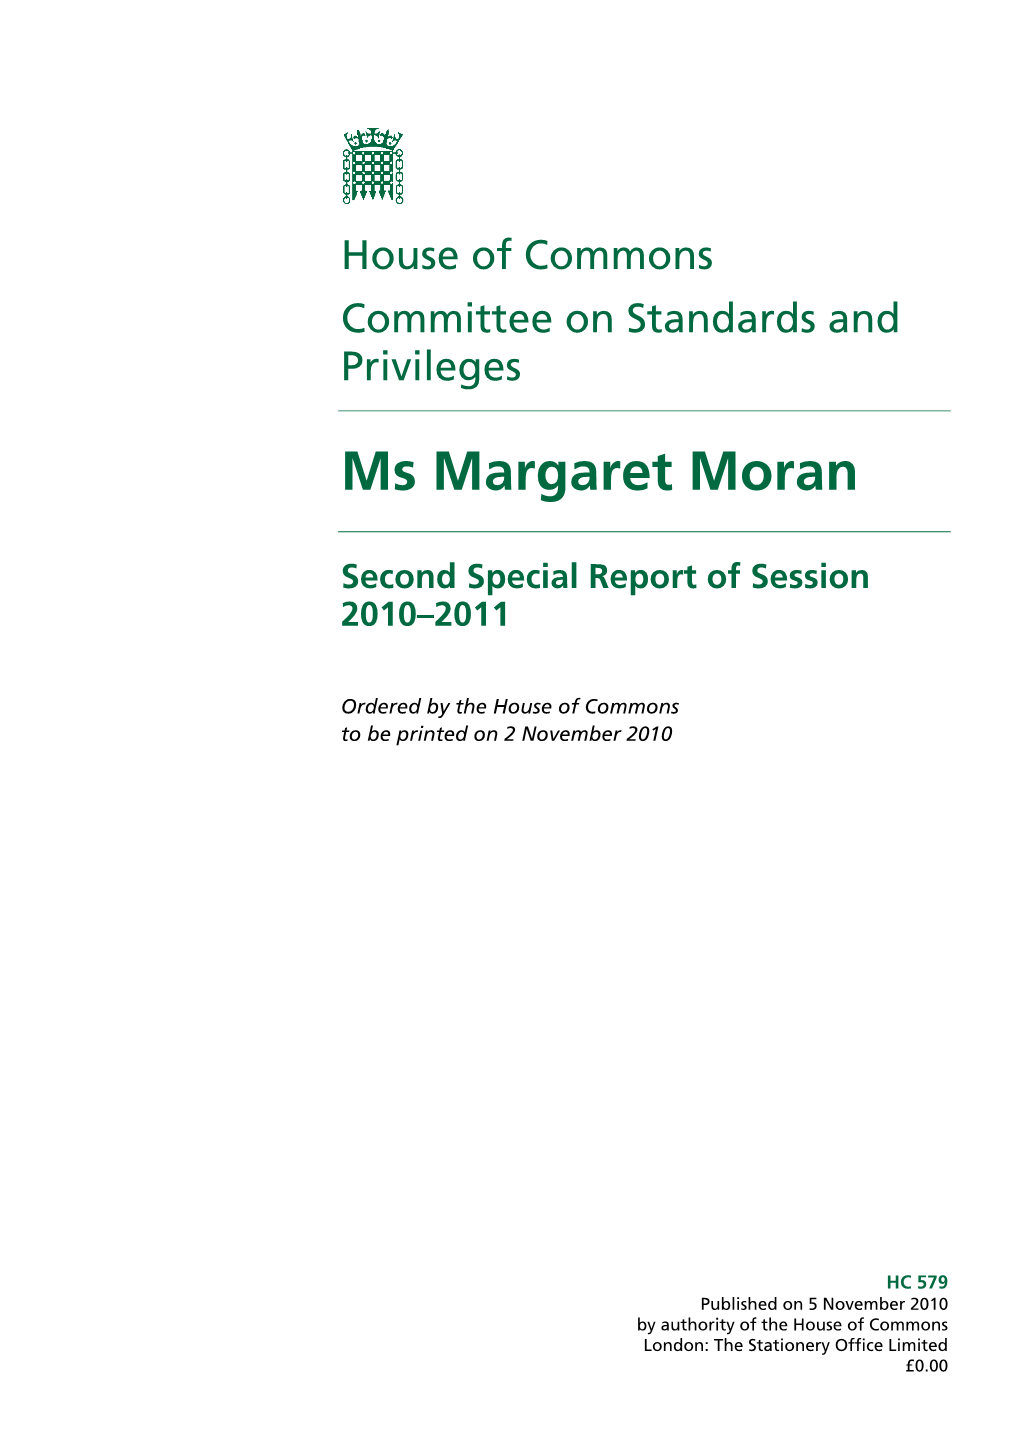 Ms Margaret Moran